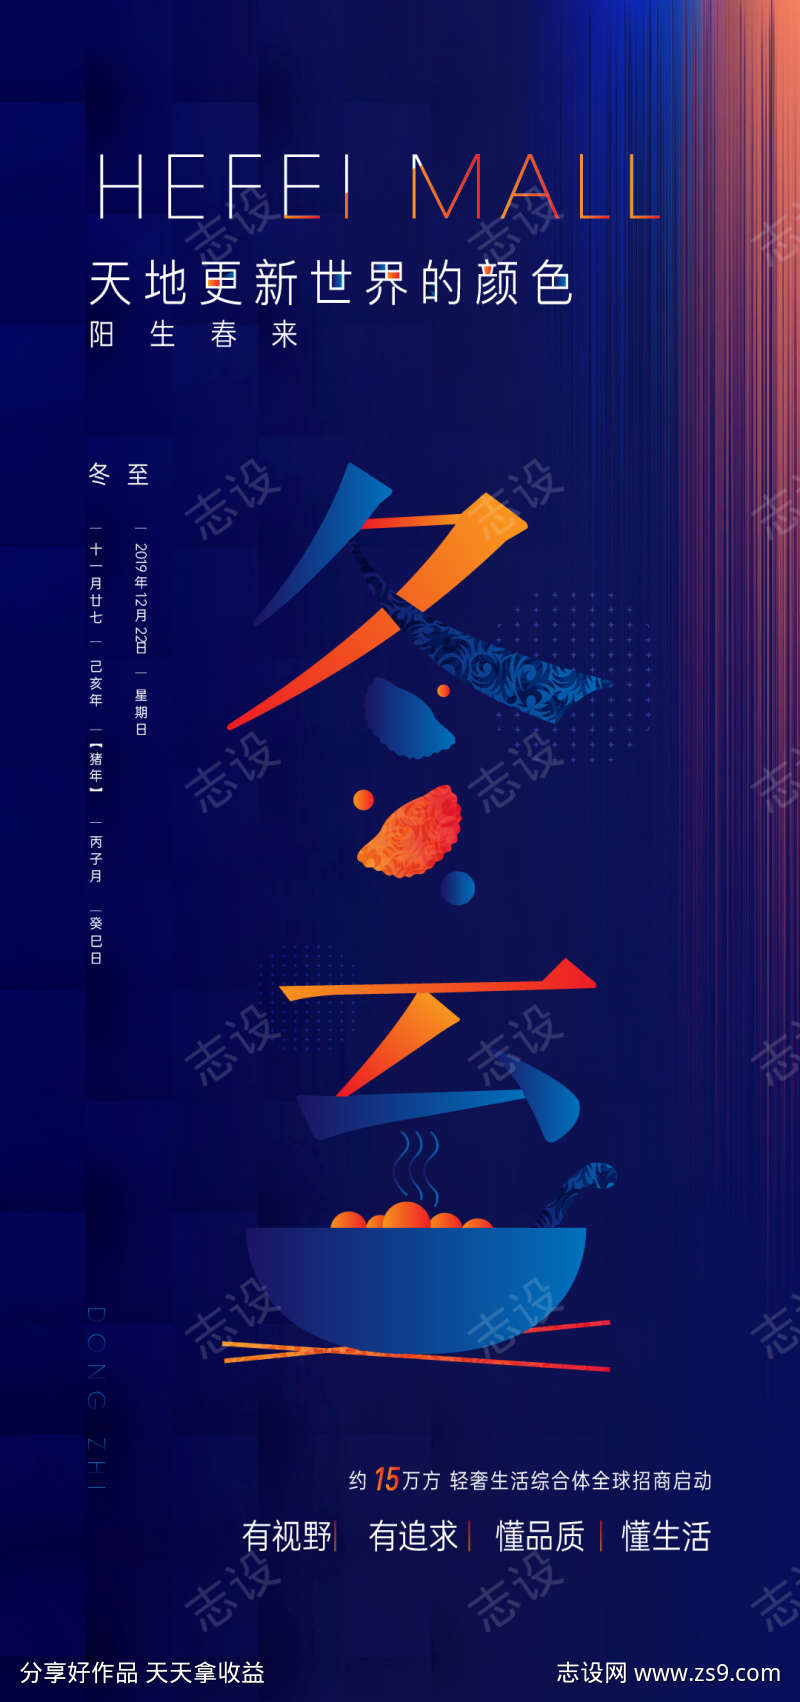 冬至24节气节日饺子海报微信稿单图价值稿